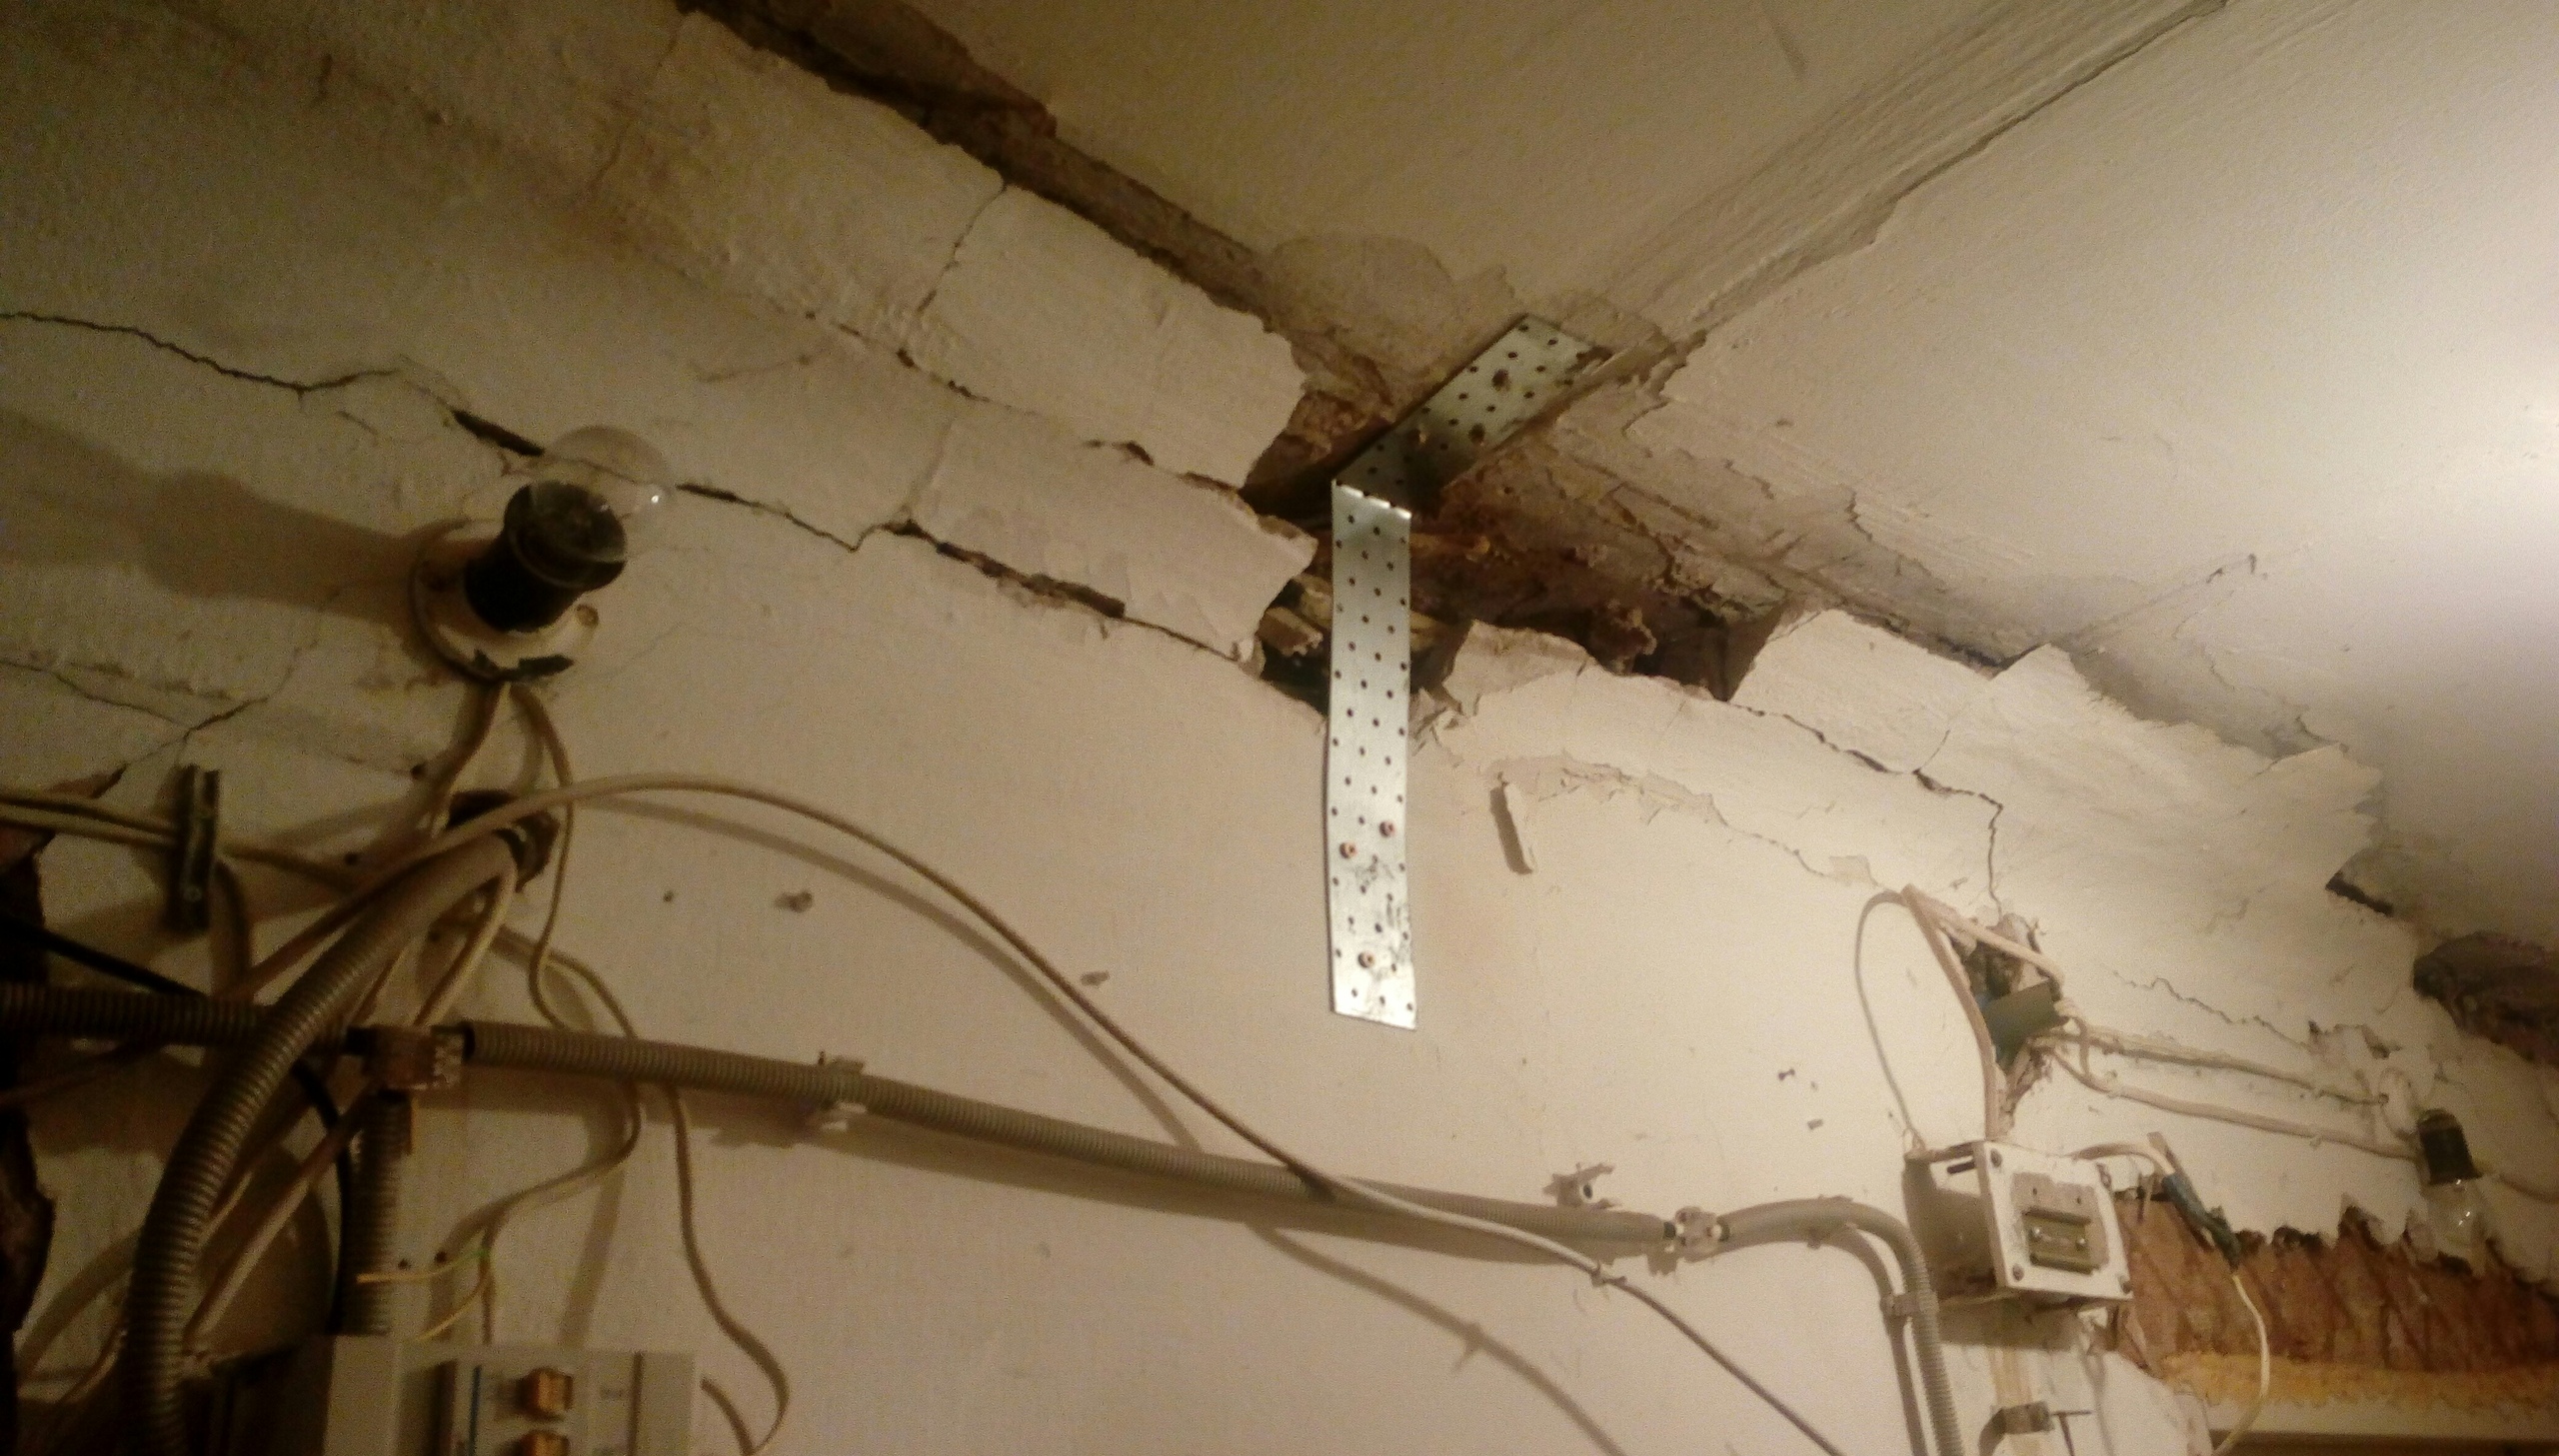 Щель между стеной и потолком управляющая компания скрепила при помощи пены и скобы